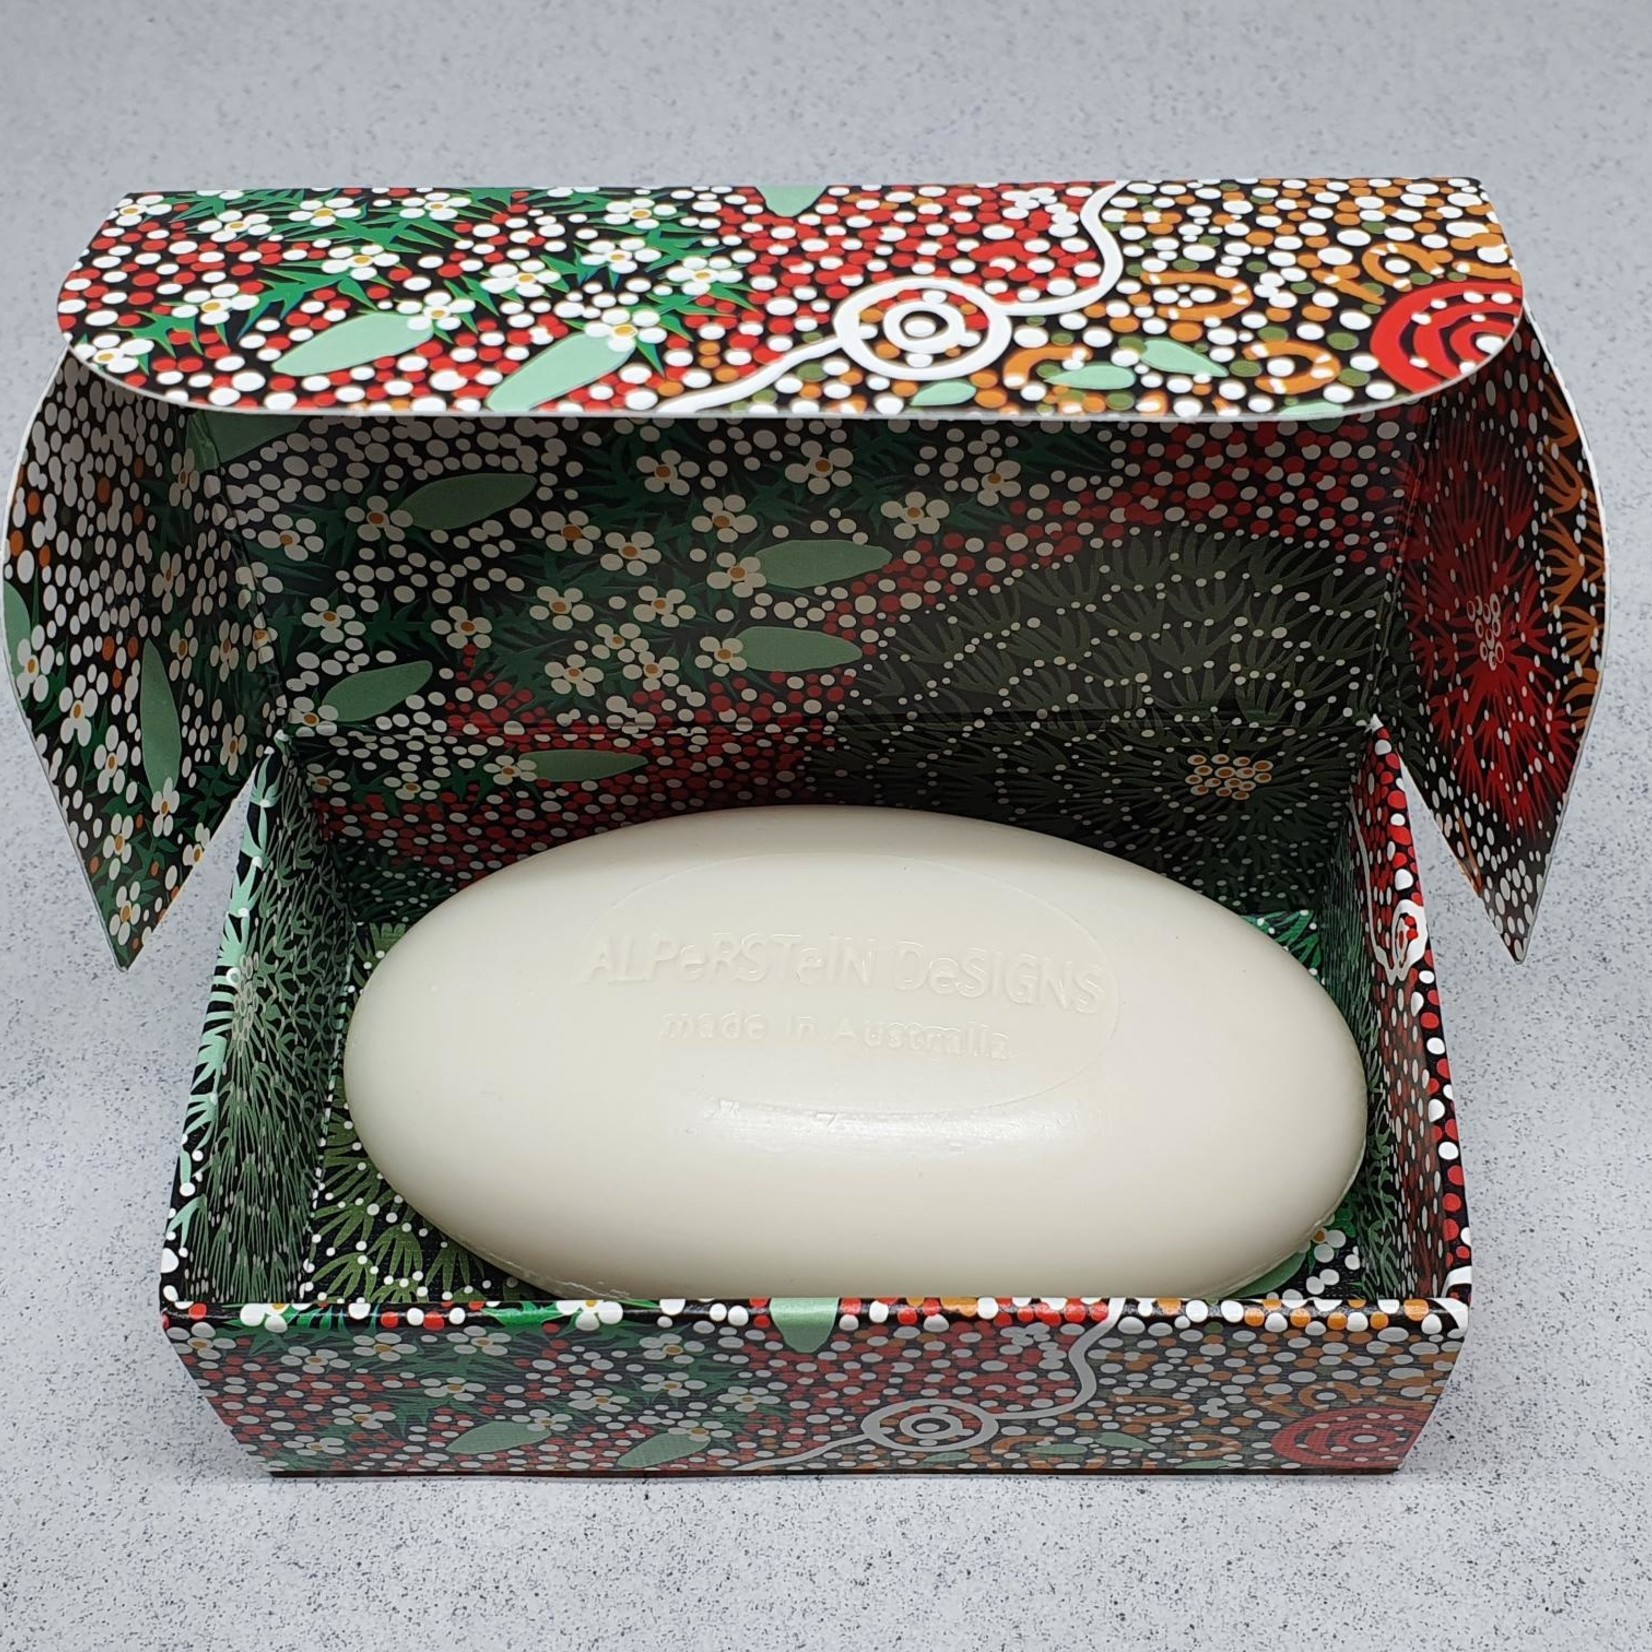 Alperstein Designs Oval Soap